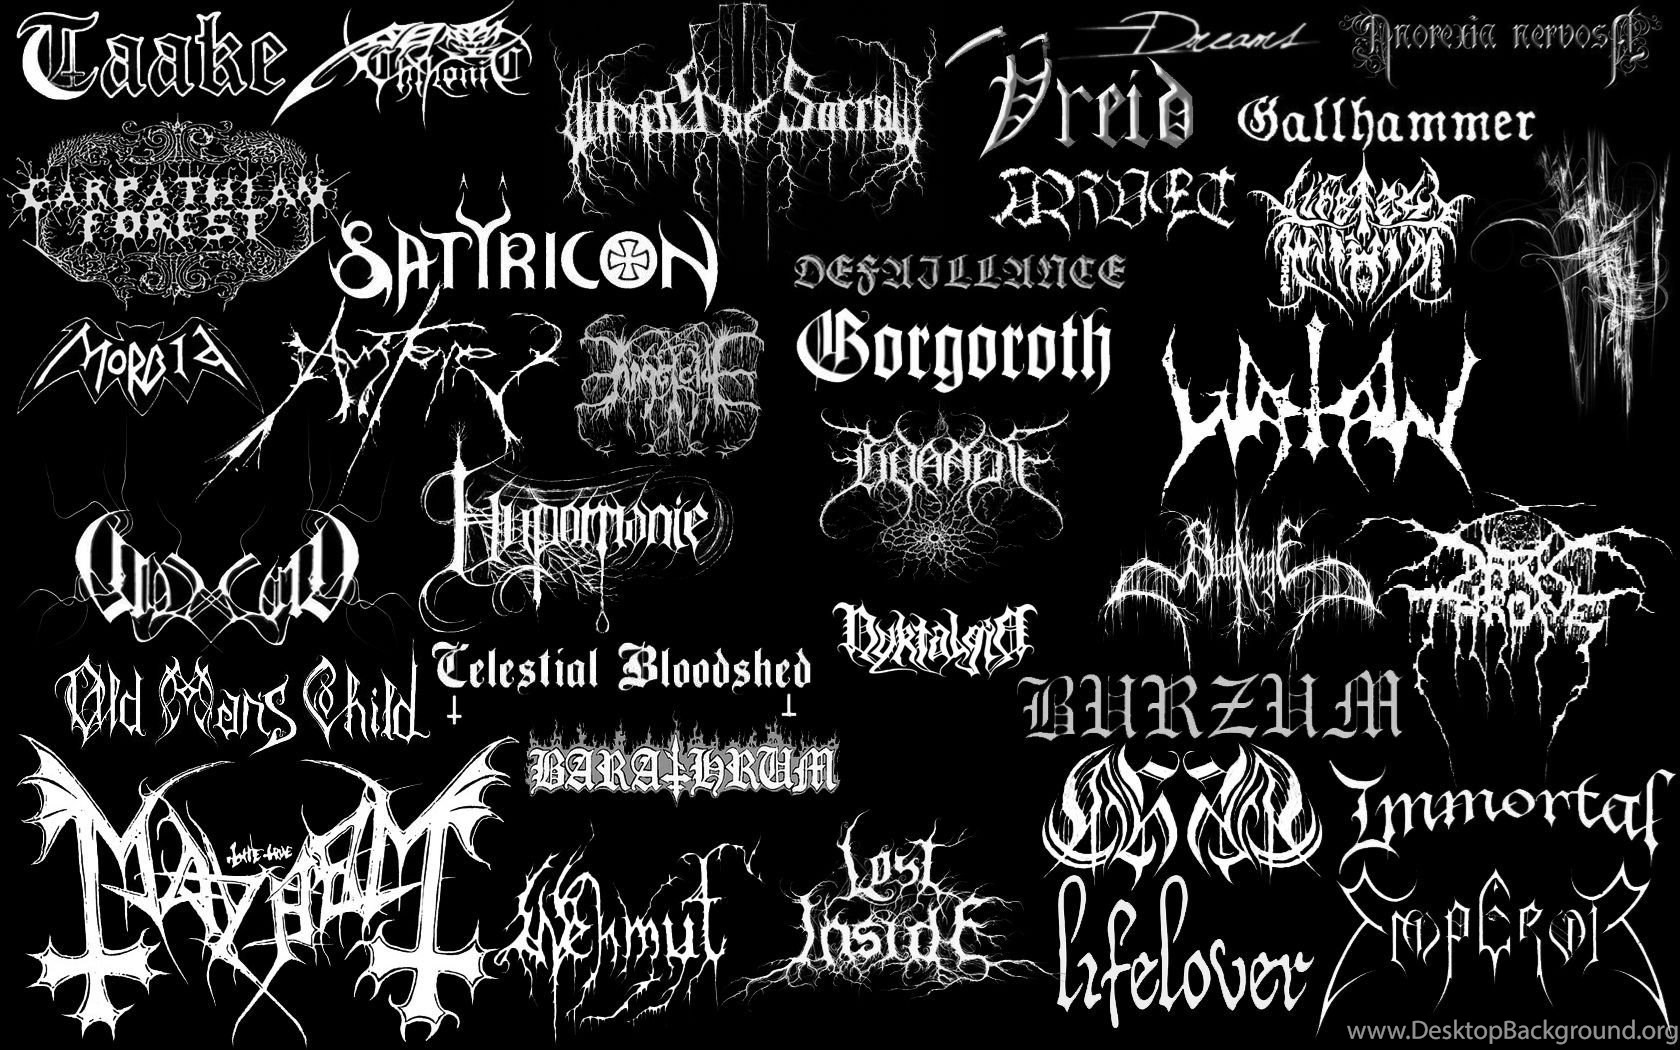 Металл про групп. Логотипы метал групп. Надпись в стиле Black Metal. Блэк металл группы логотипы. Black Metal группы название.